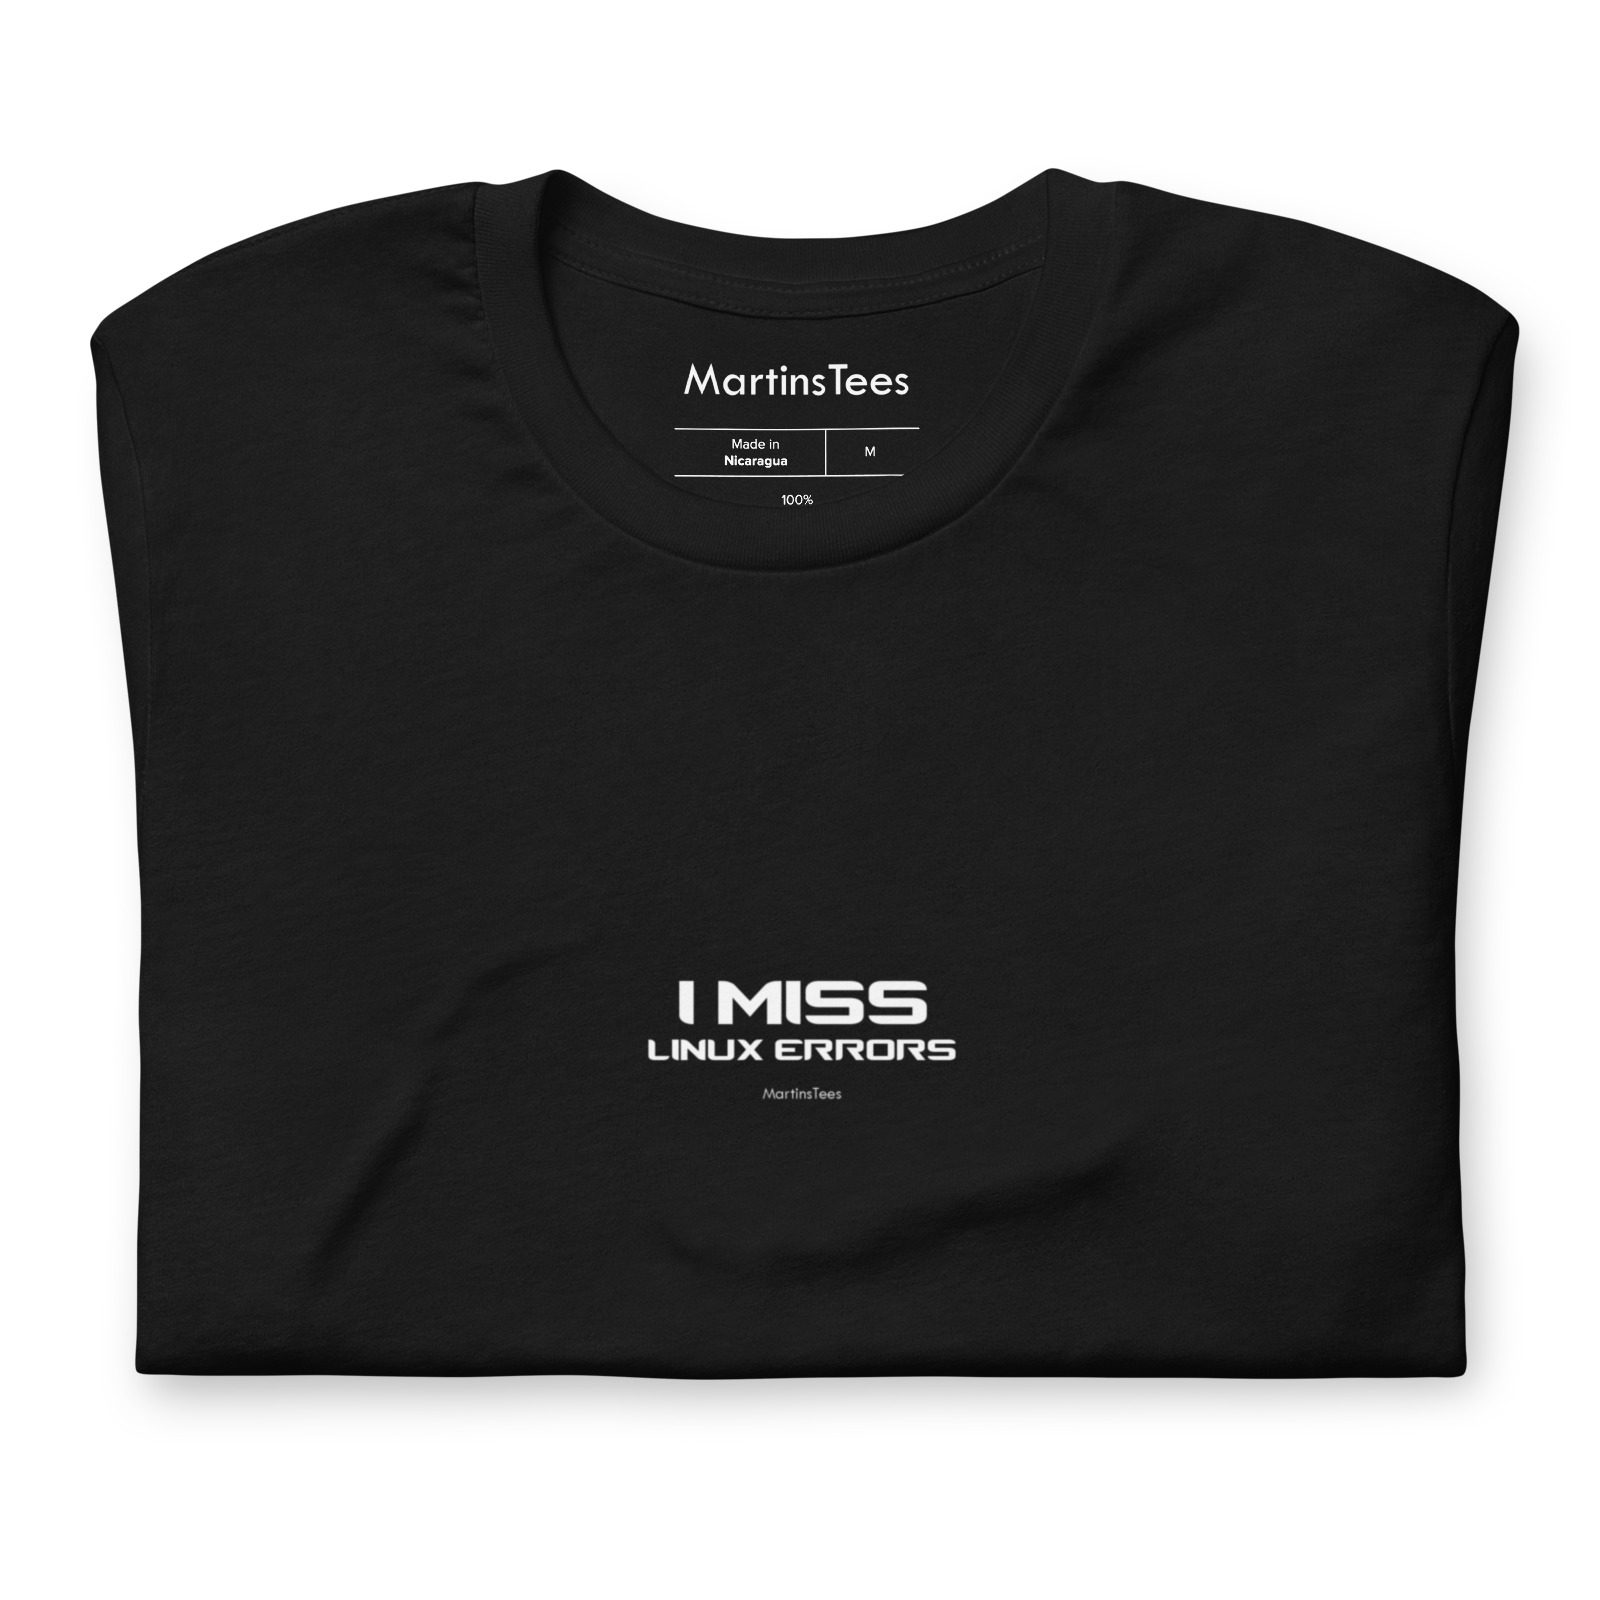 T-shirt: I MISS - LINUX ERRORS